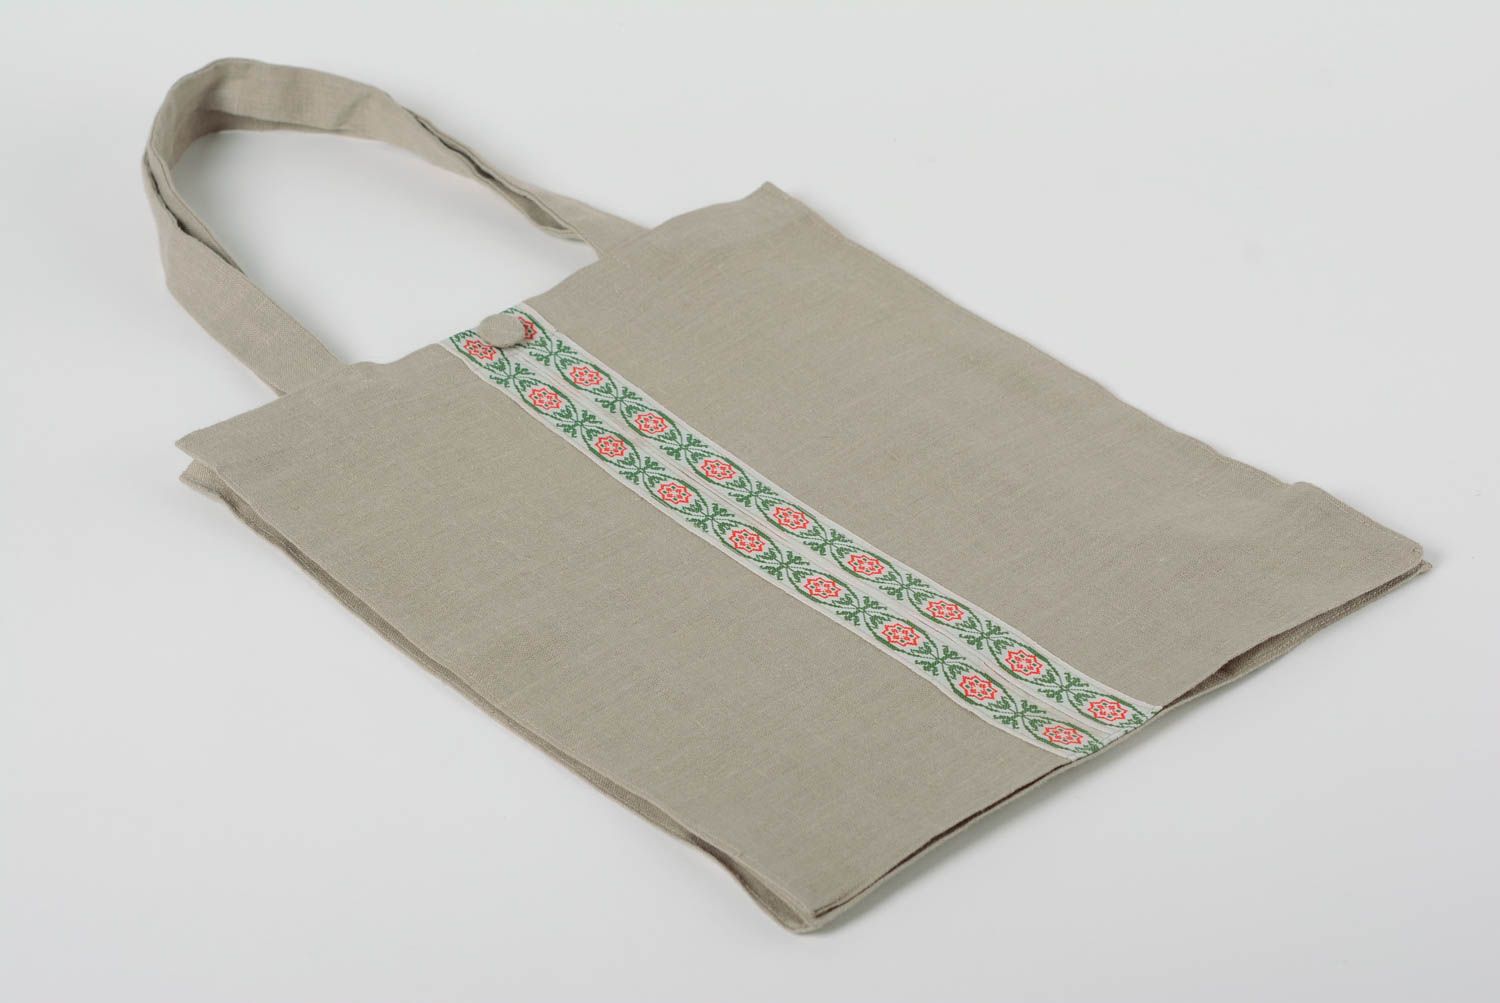 Женская сумка из льна с тесьмой ручной работы светлая вместительная удобная фото 1